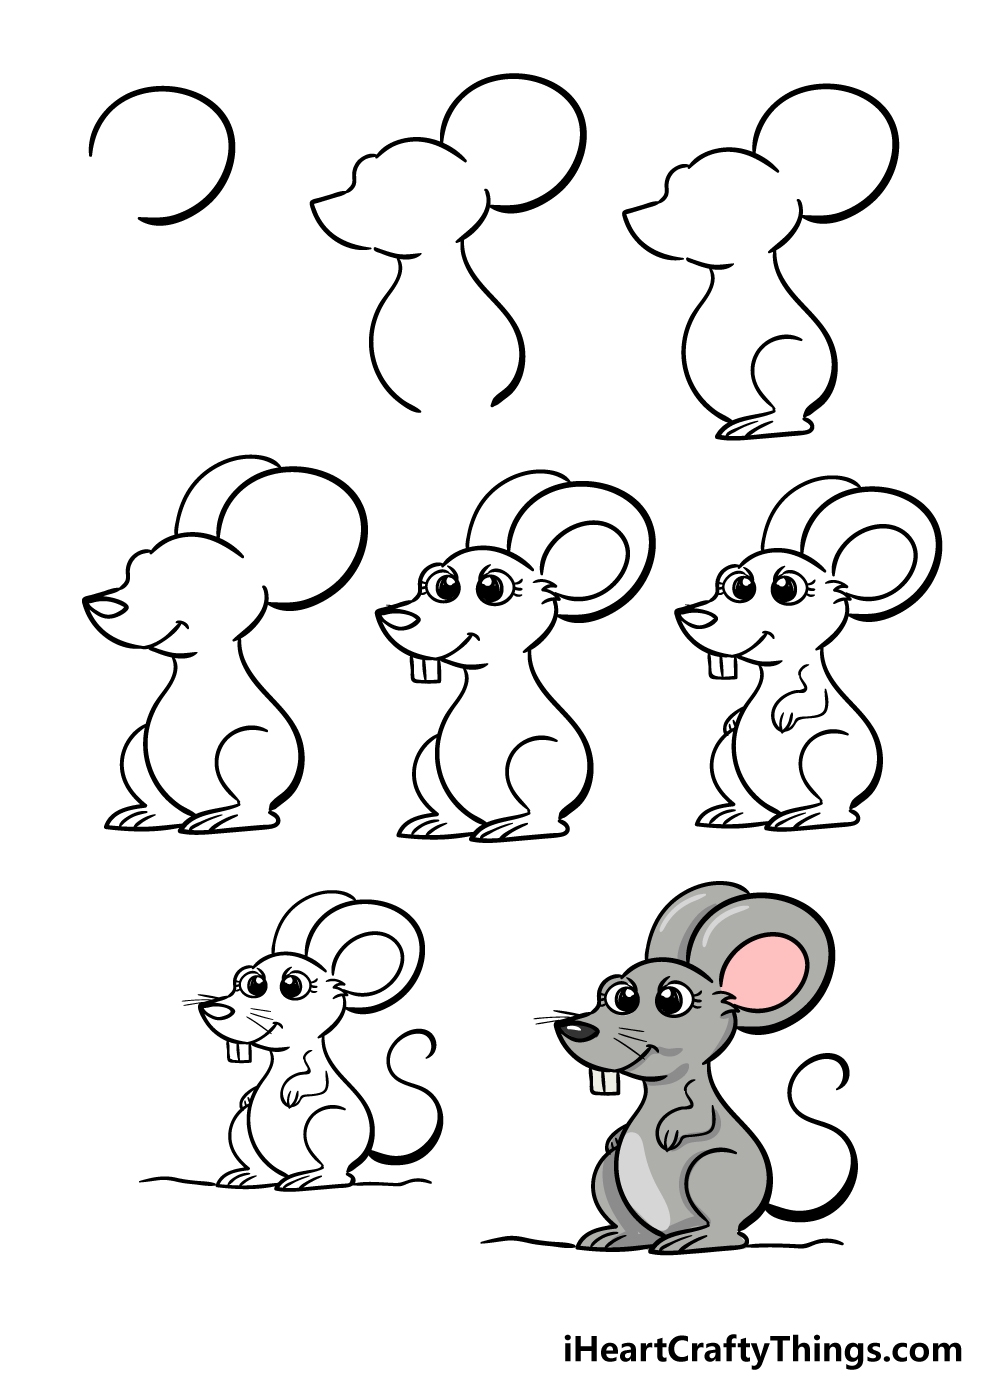 Мышка карандашом для детей